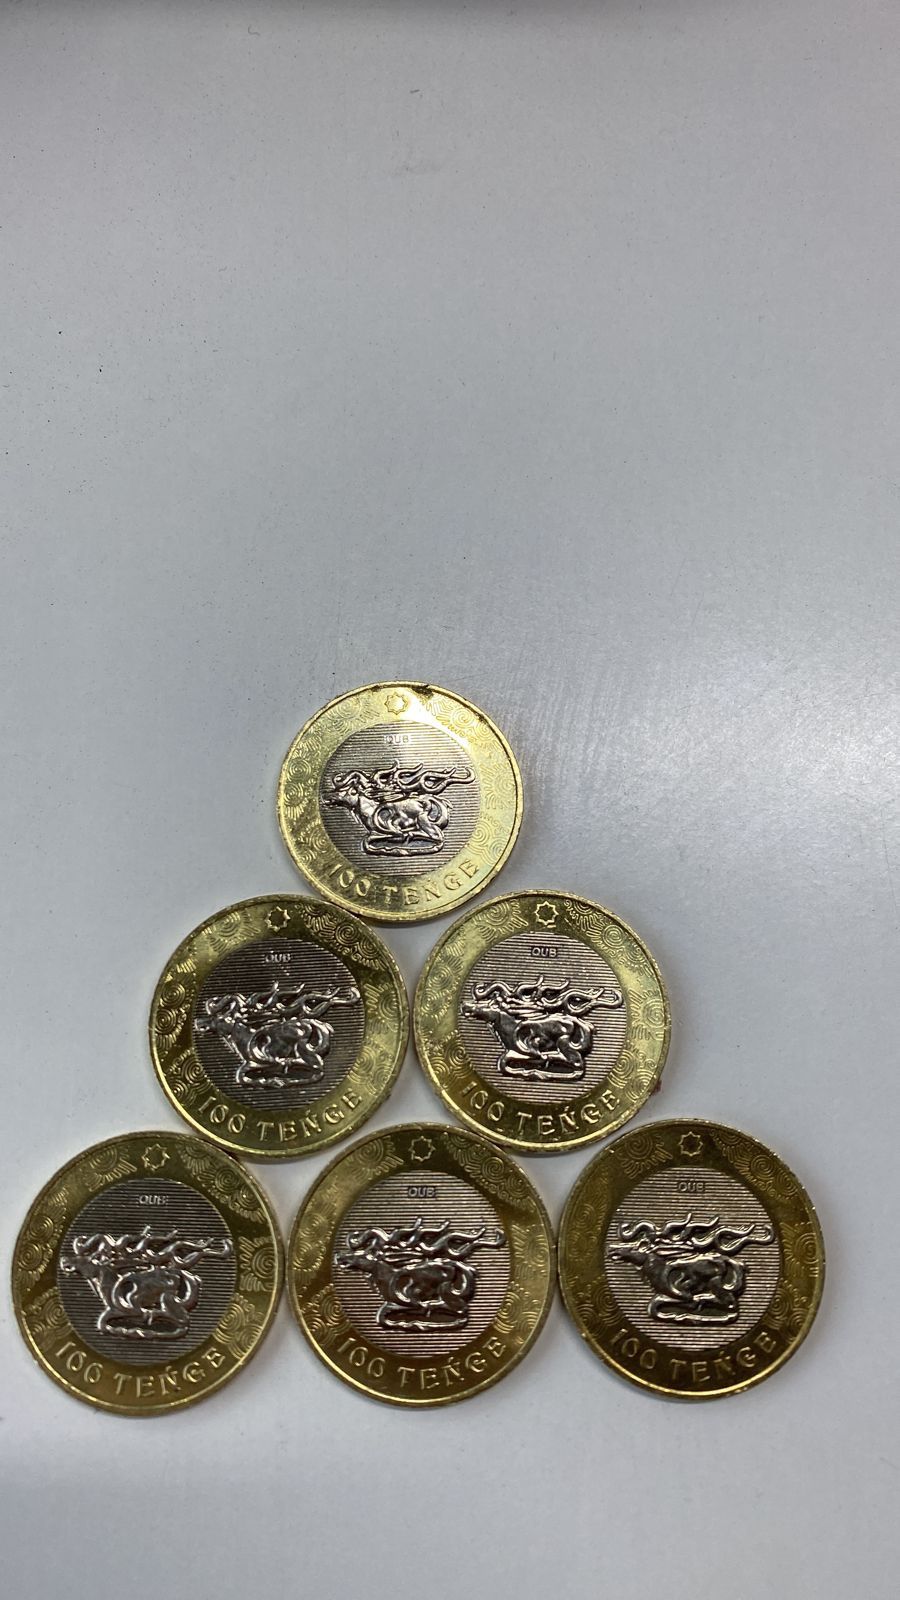 Қазақстанские редкие монеты 100теңге